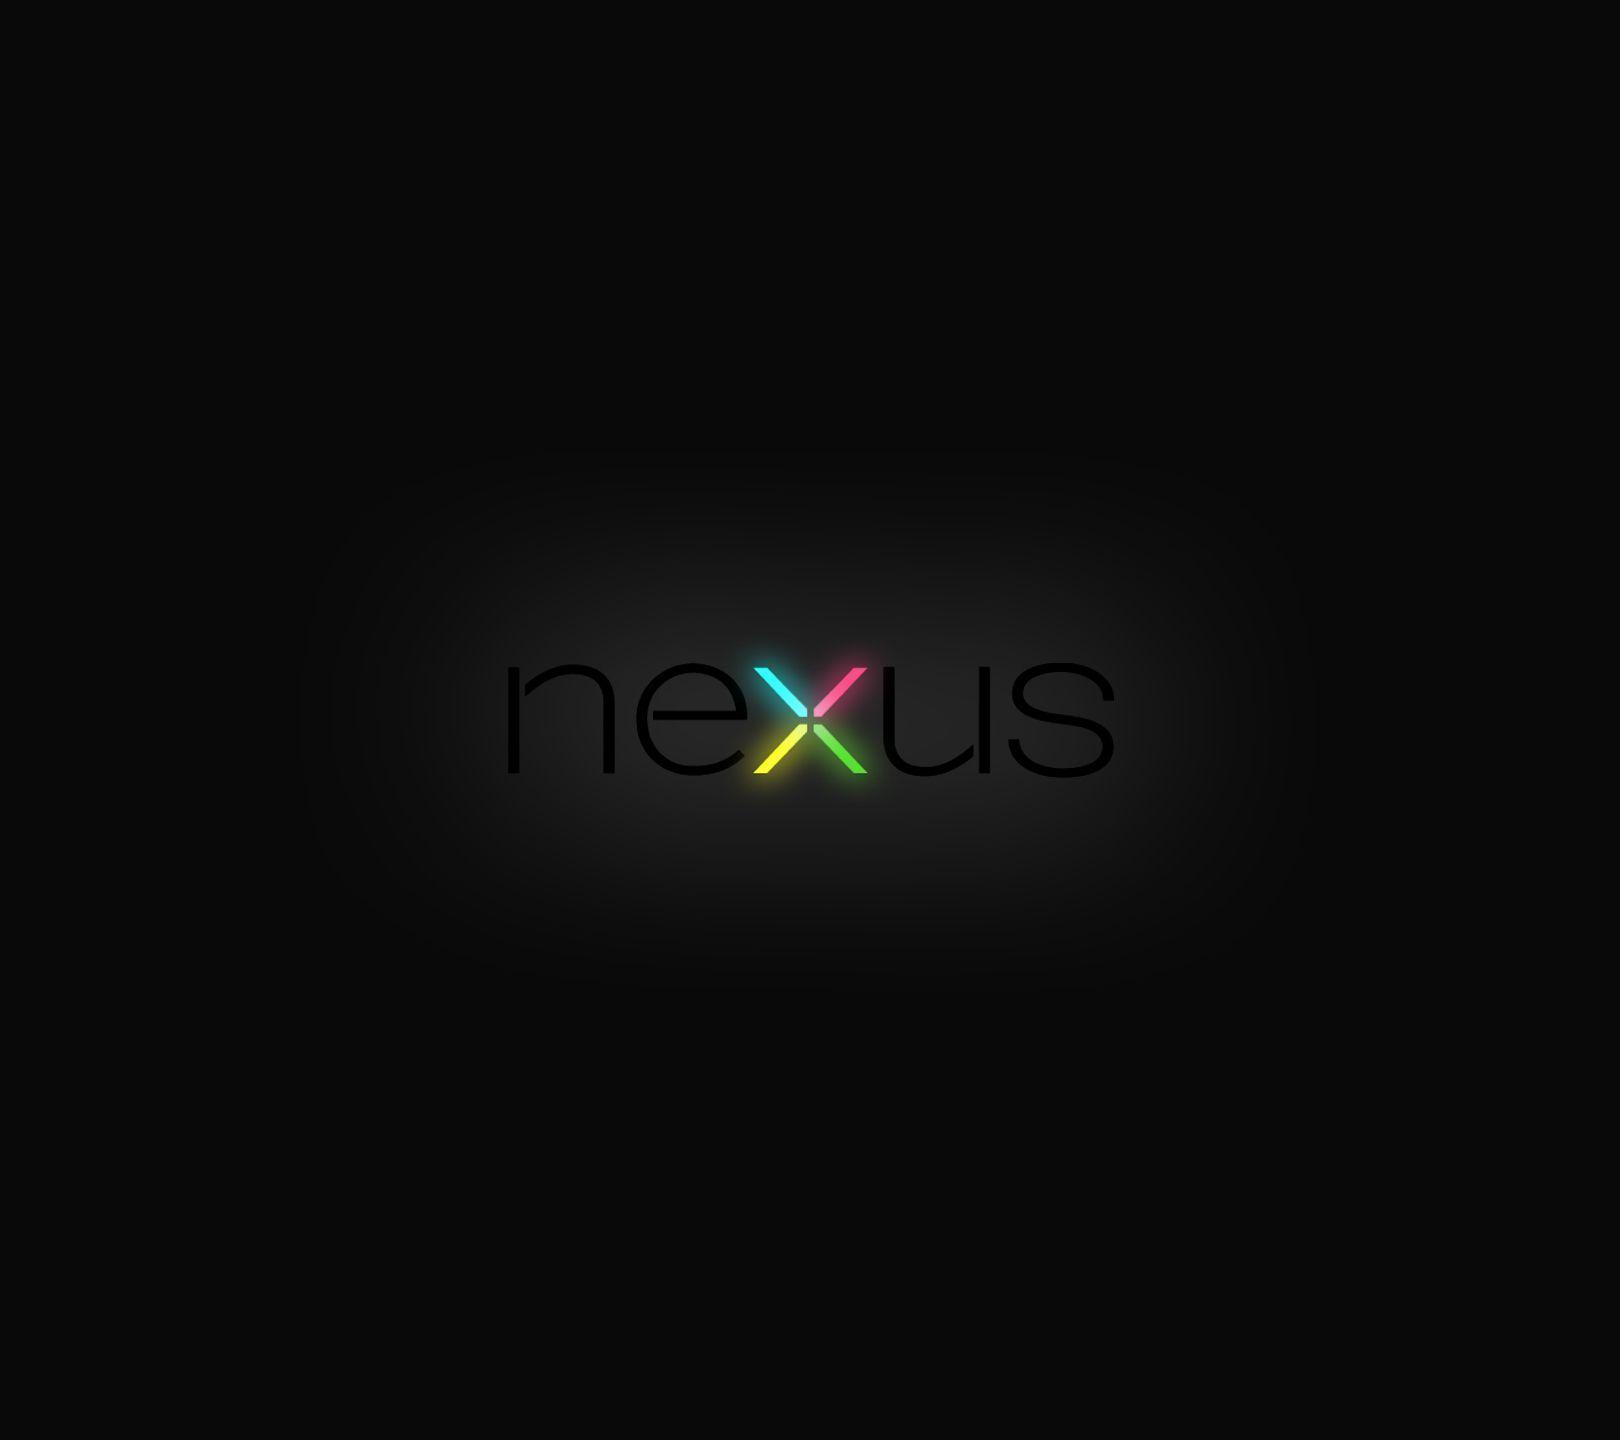 Nexus Wallpaper 357